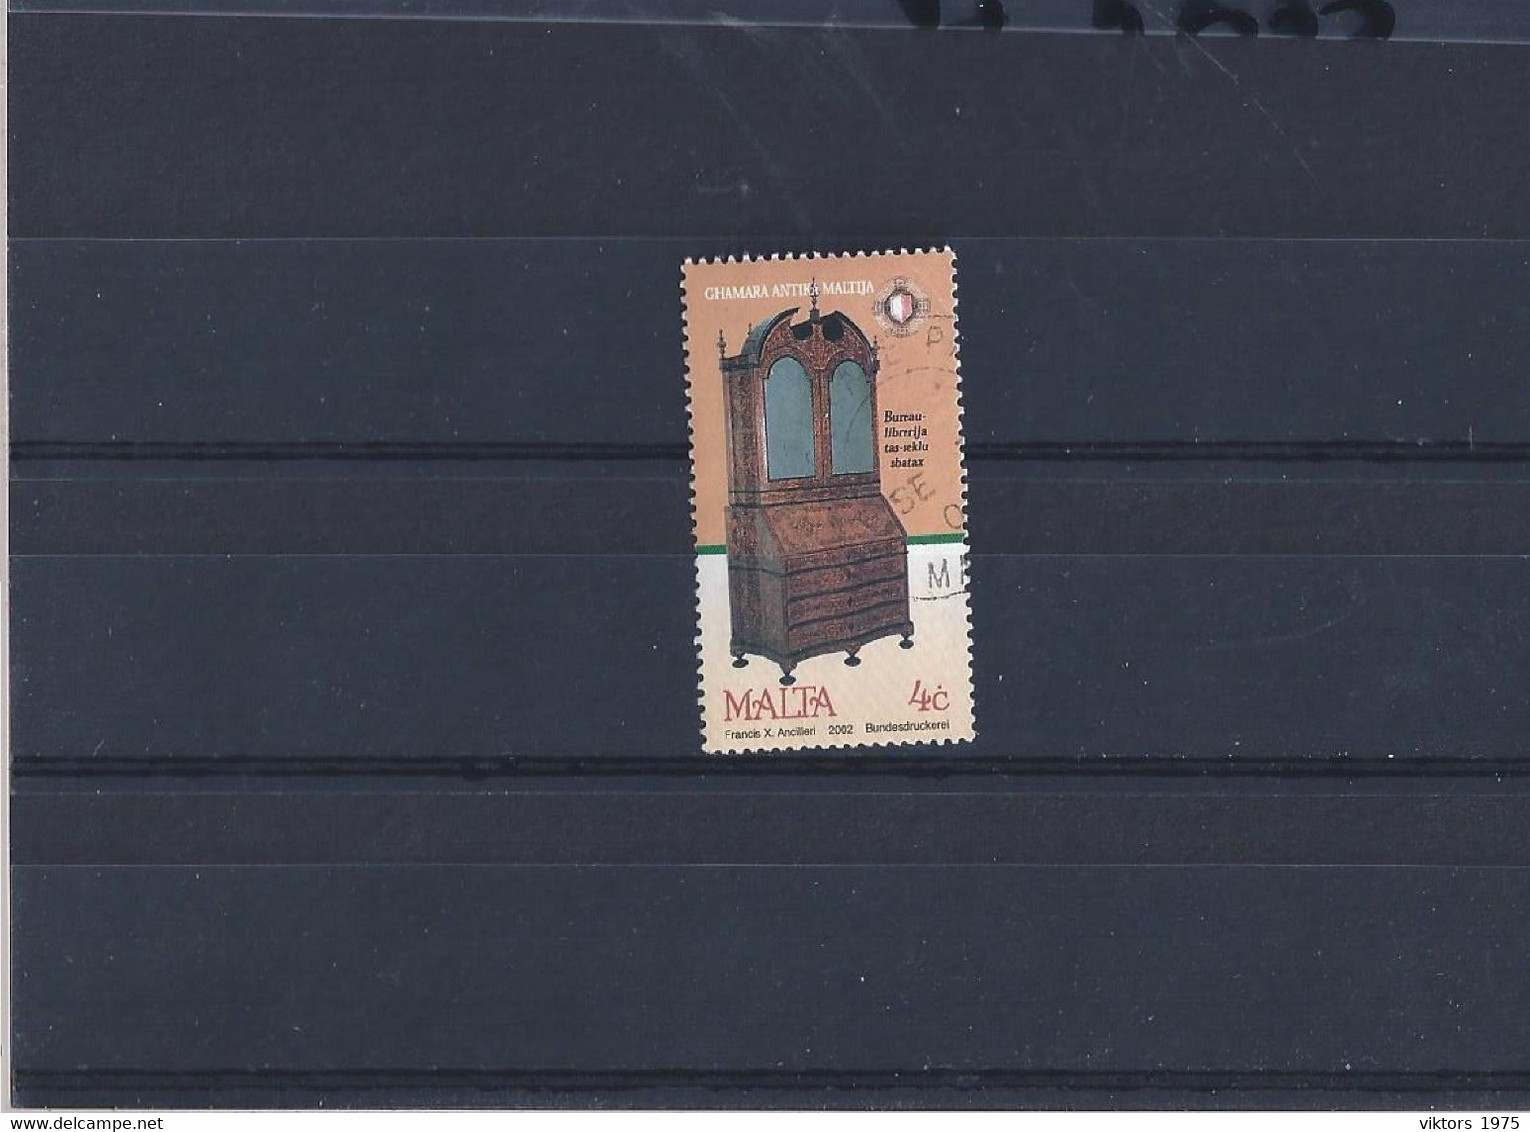 Used Stamp Nr.1212 In MICHEL Catalog - Malta